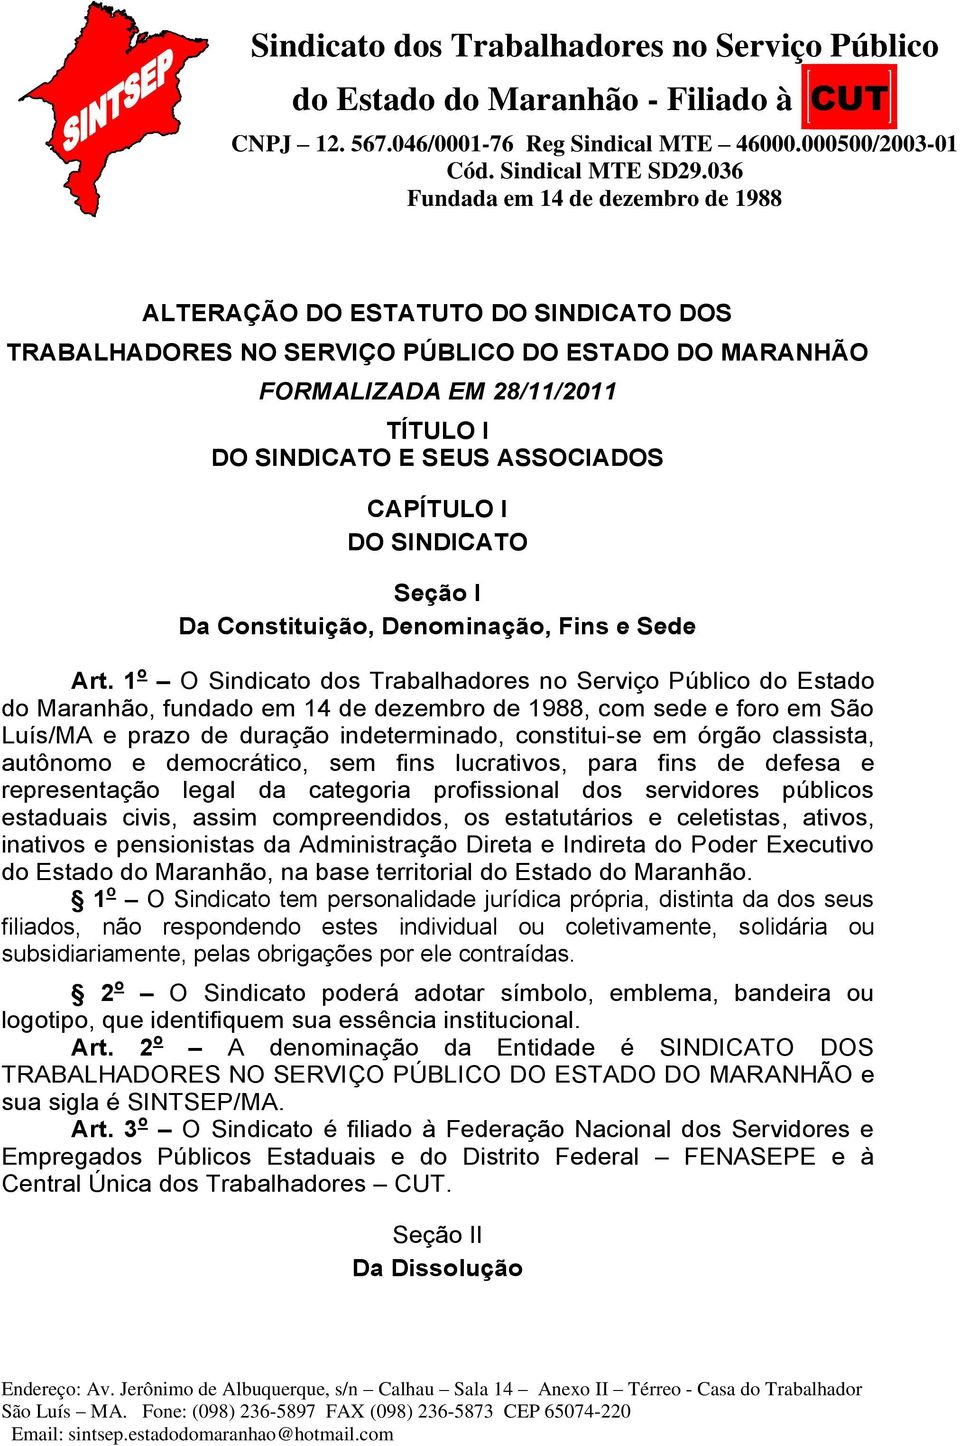 1 o O Sindicato dos Trabalhadores no Serviço Público do Estado do Maranhão, fundado em 14 de dezembro de 1988, com sede e foro em São Luís/MA e prazo de duração indeterminado, constitui-se em órgão